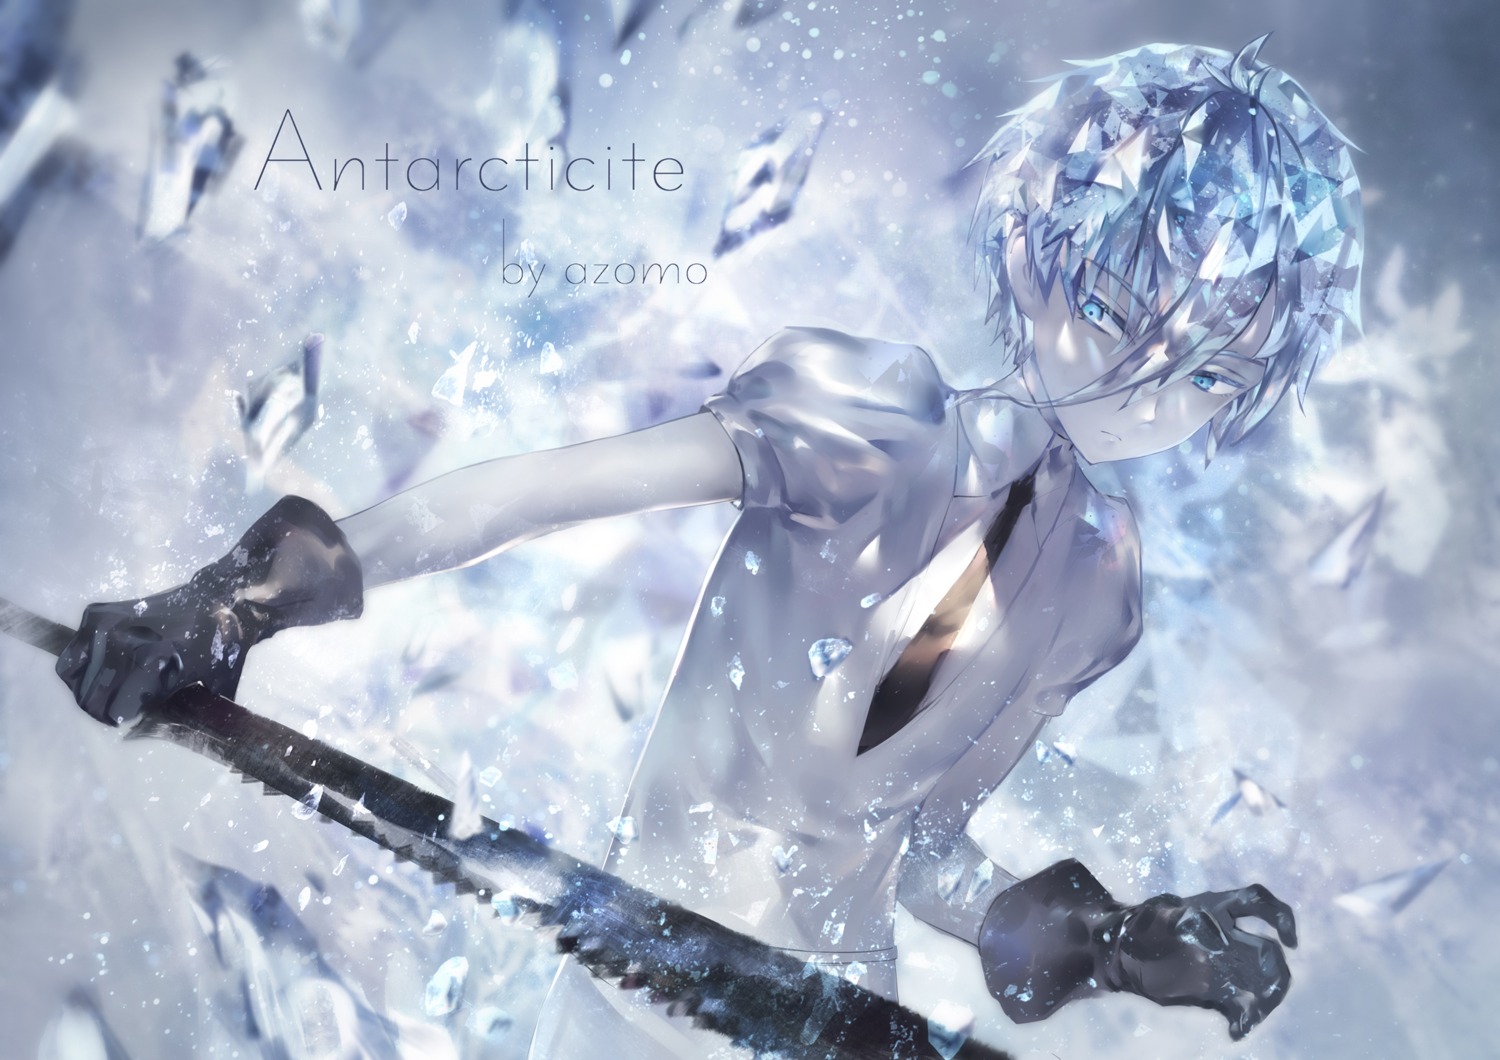 antarcticite azomo houseki_no_kuni weapon